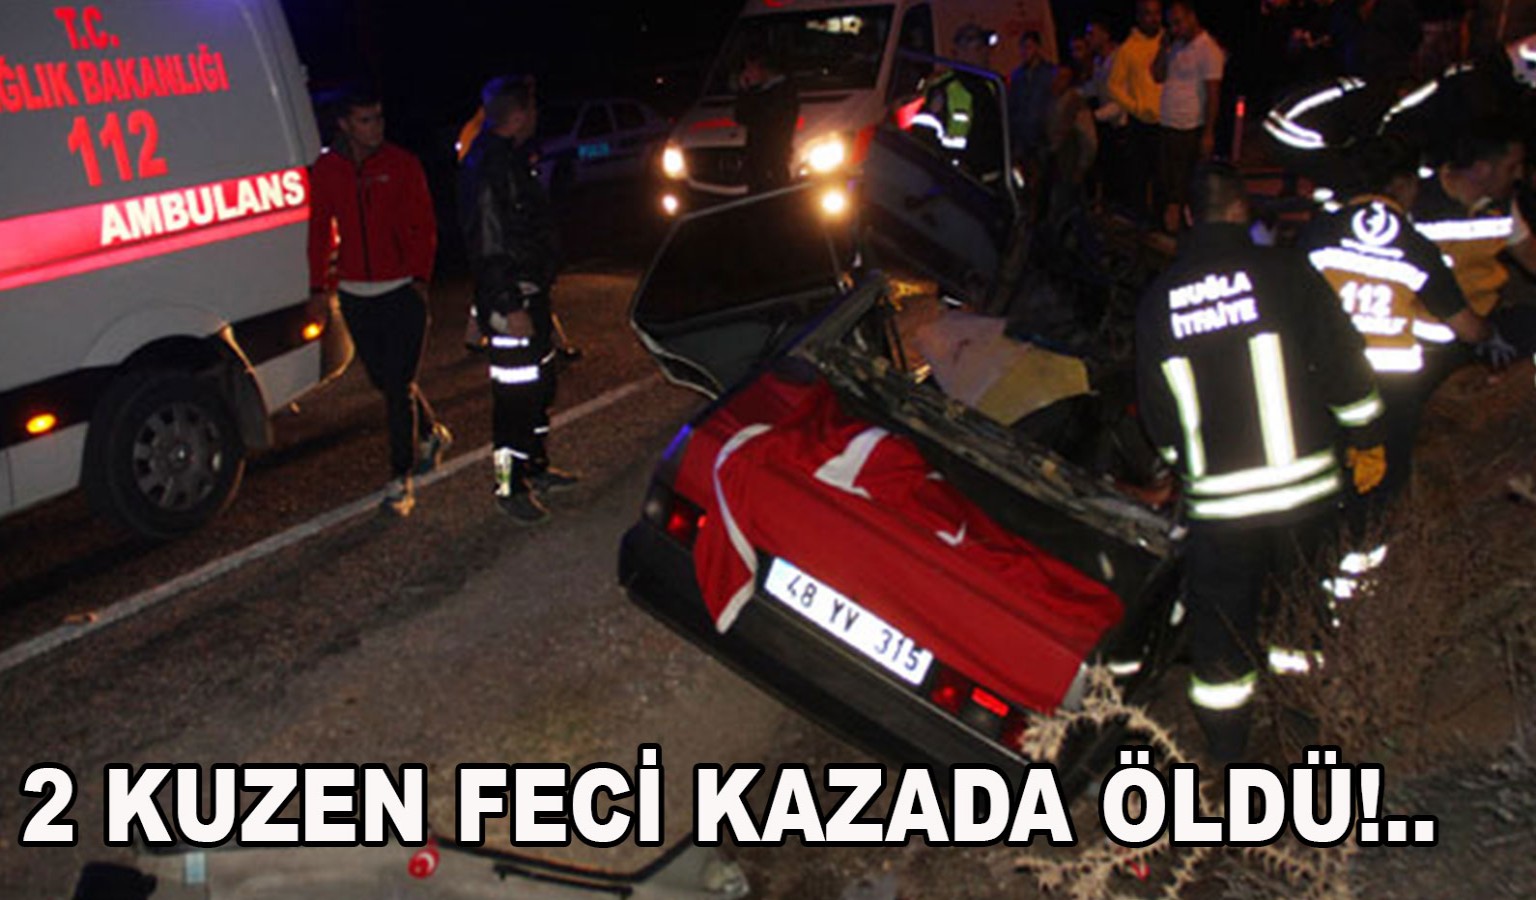 2 KUZEN FECİ KAZADA ÖLDÜ!..